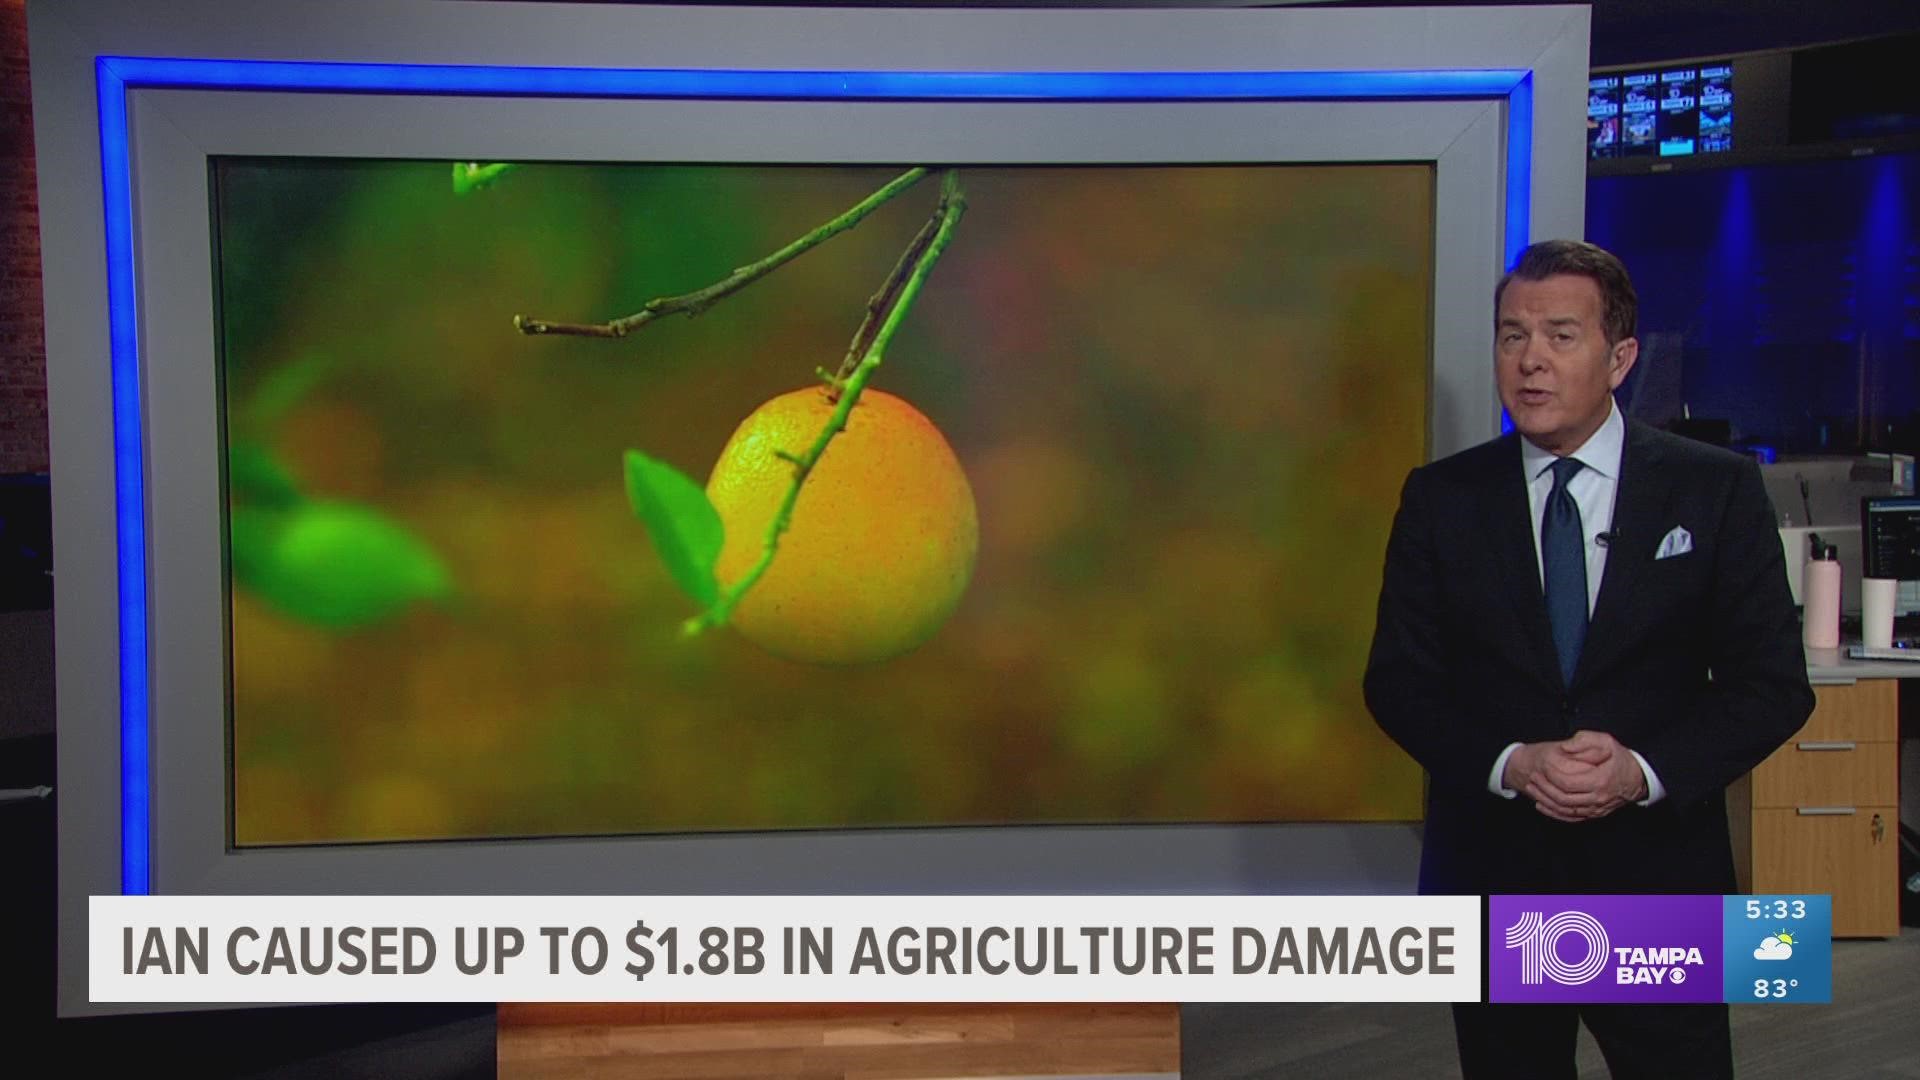 Crop damage ranged from $686 million to $1.2 billion.